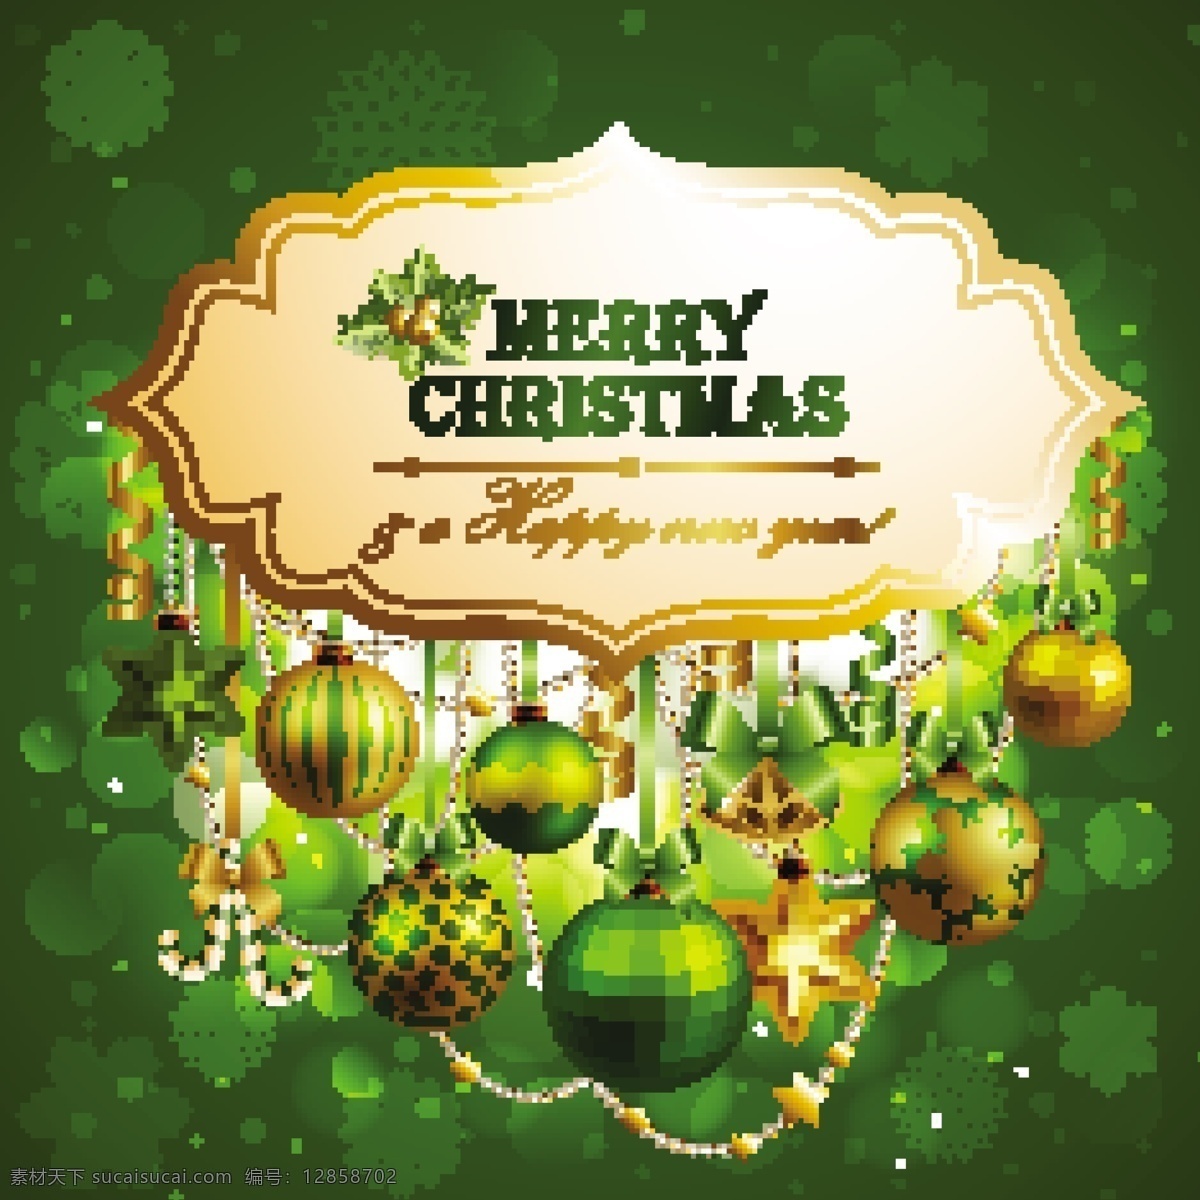 装饰 圣诞 标签 上 闪闪 发光 绿色 背景 摘要背景壁纸 旗帜和徽章 庆典和聚会 圣诞节 设计元素 节假日 季节性 装饰装潢 模板和模型